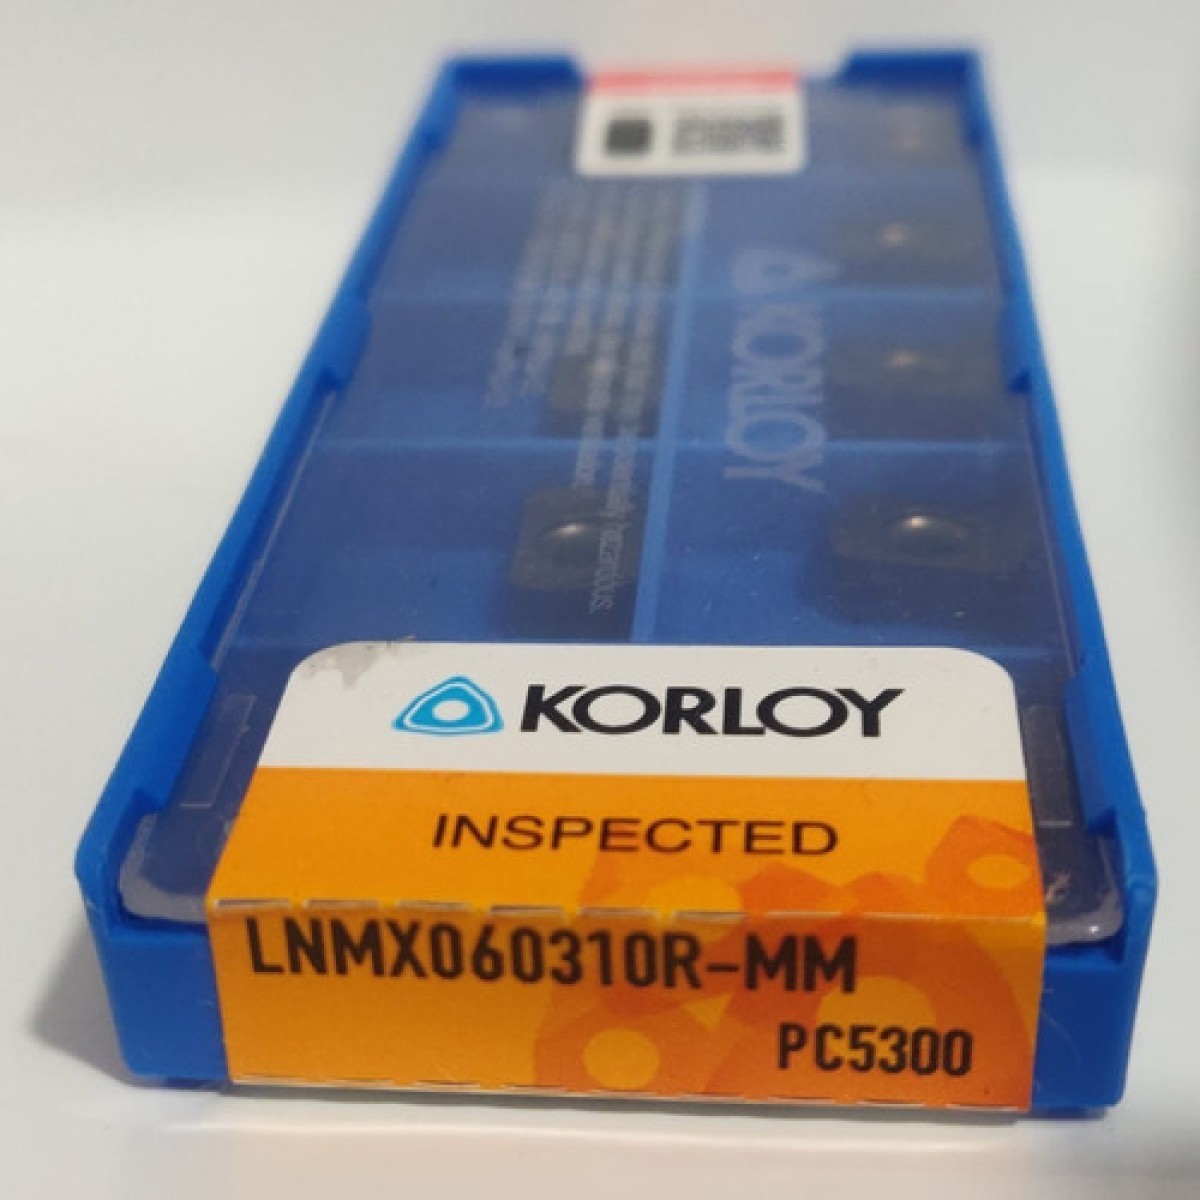 KORLOY - LNMX060310R-MM PC5300